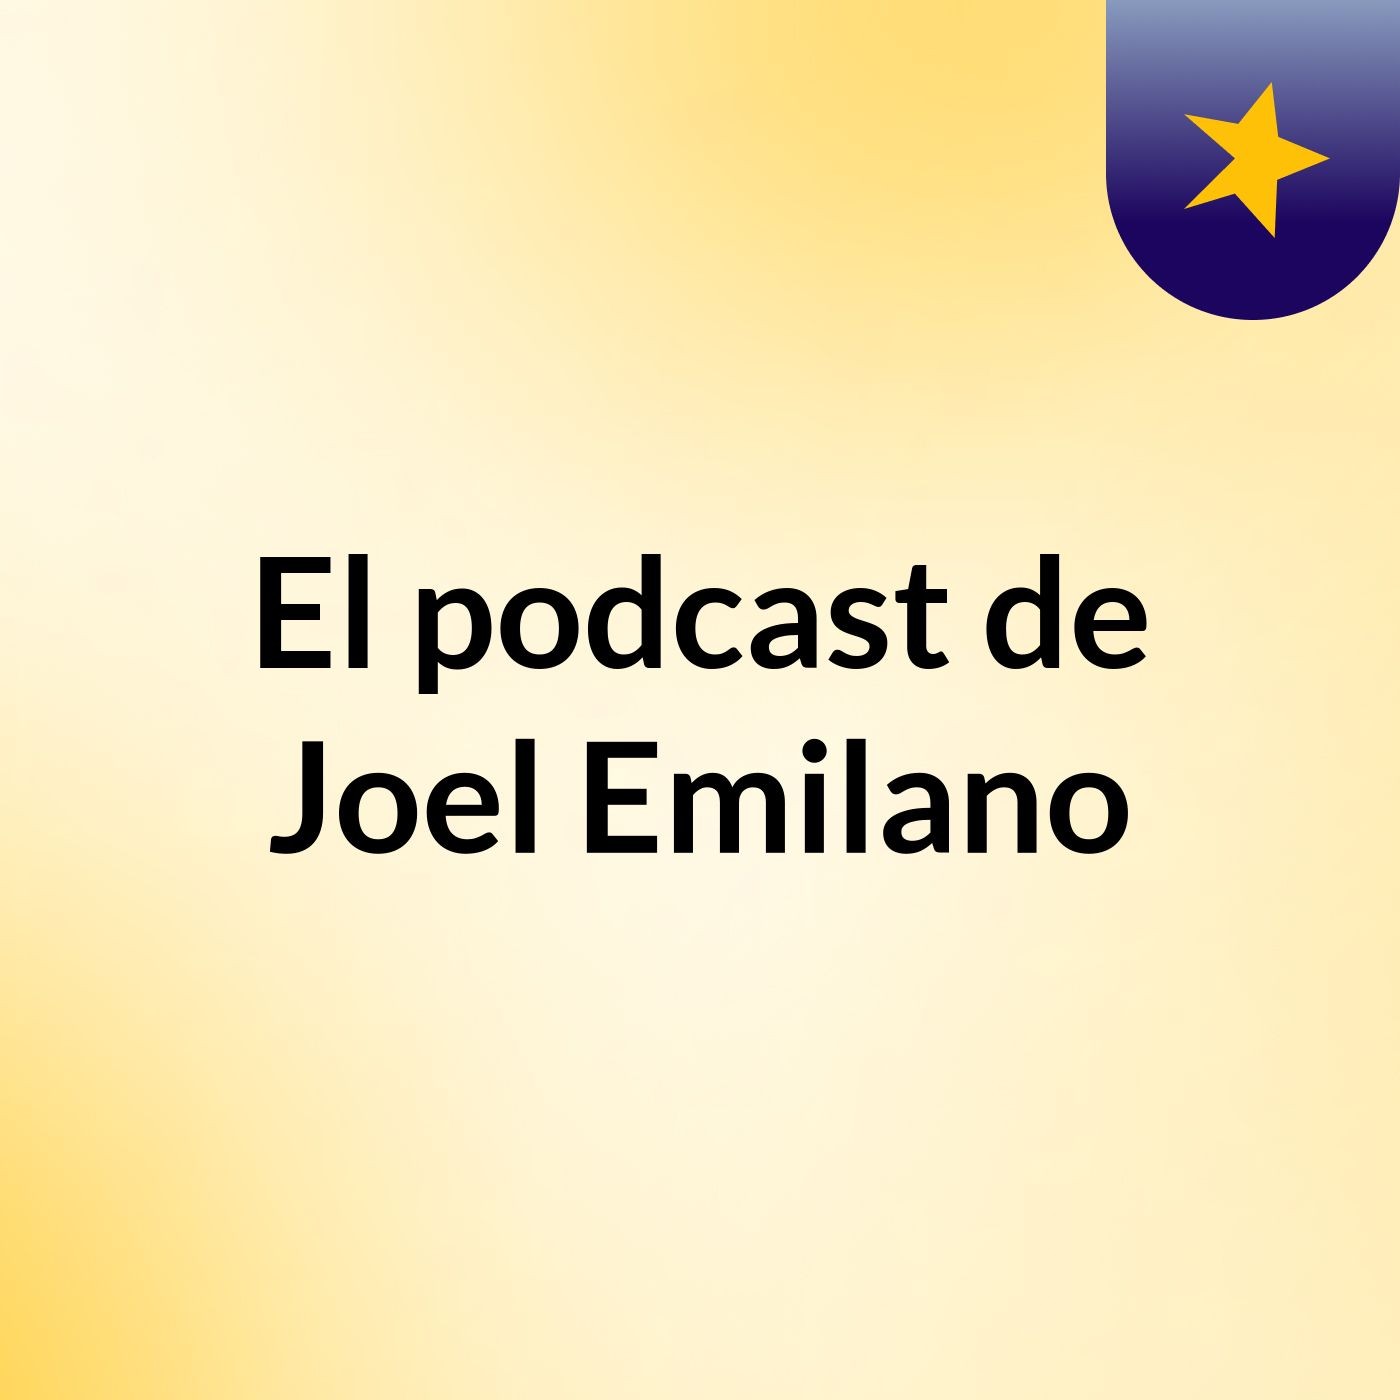 El podcast de Joel Emilano